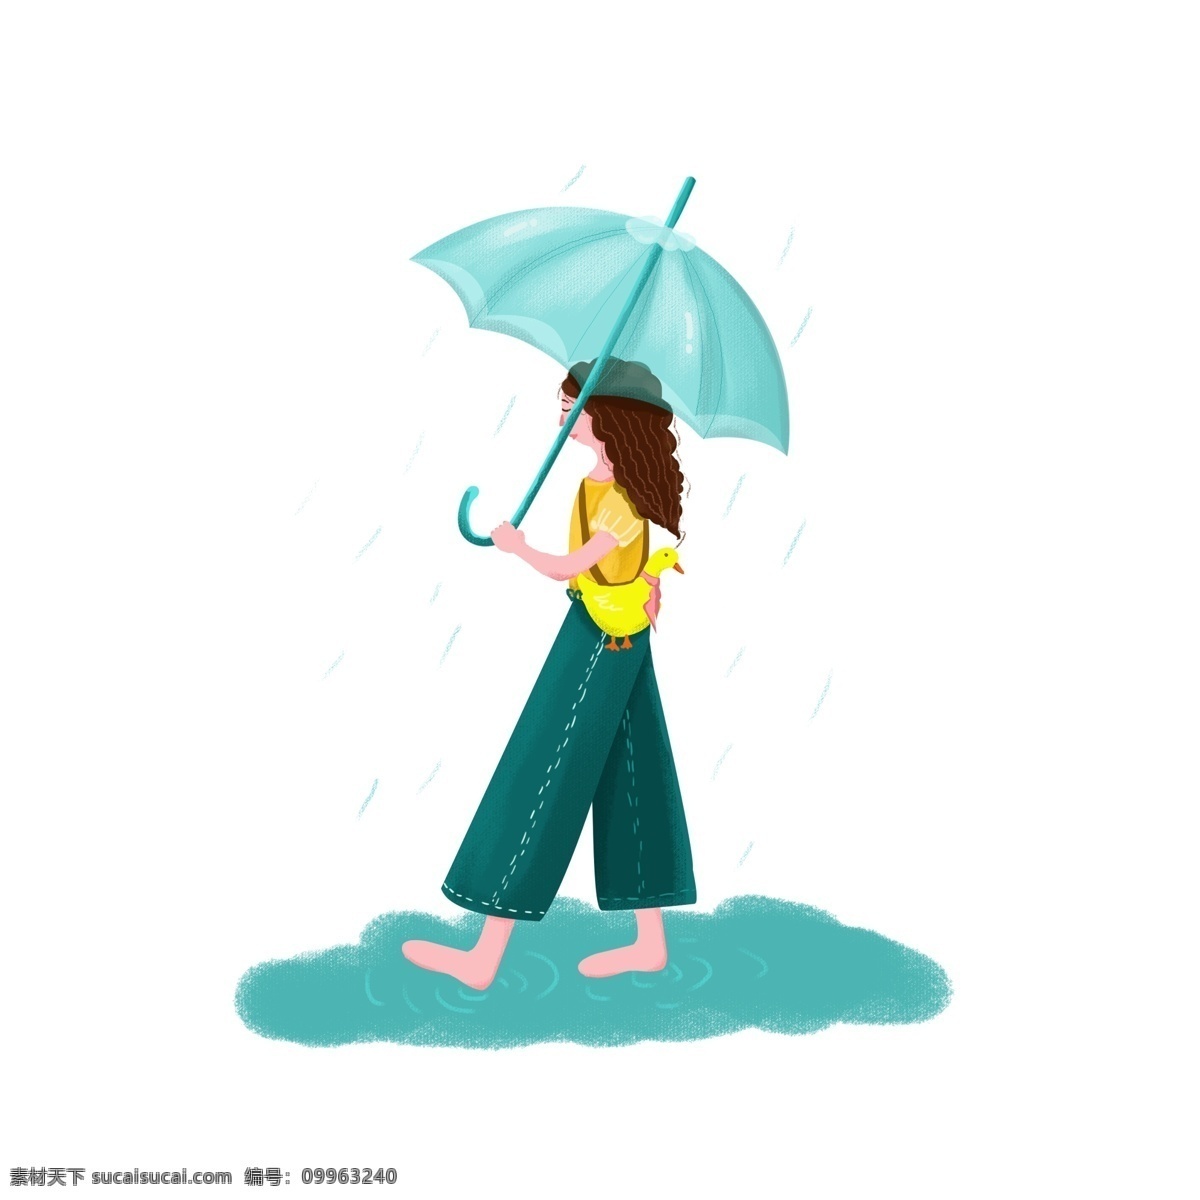 雨天 雨伞 女孩 打伞 手绘 风 人物 元素 雨水 打伞女孩 绿色 唯美治愈 手绘风 人物元素